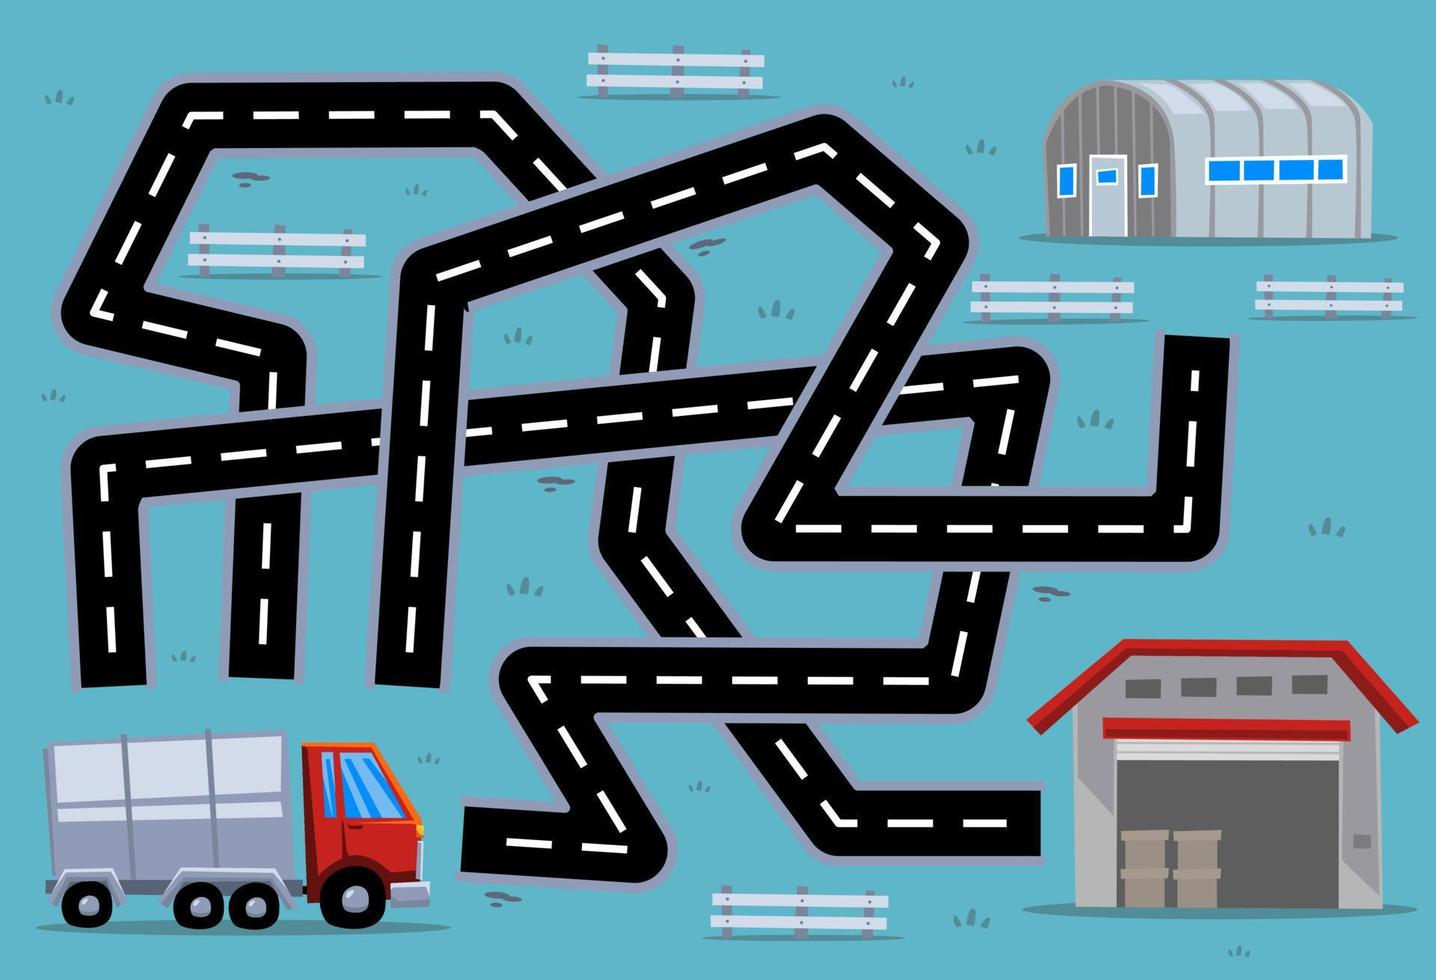 jeu de puzzle de labyrinthe pour les enfants aide le camion de transport de dessin animé à trouver le bon chemin vers l'entrepôt ou la caserne vecteur